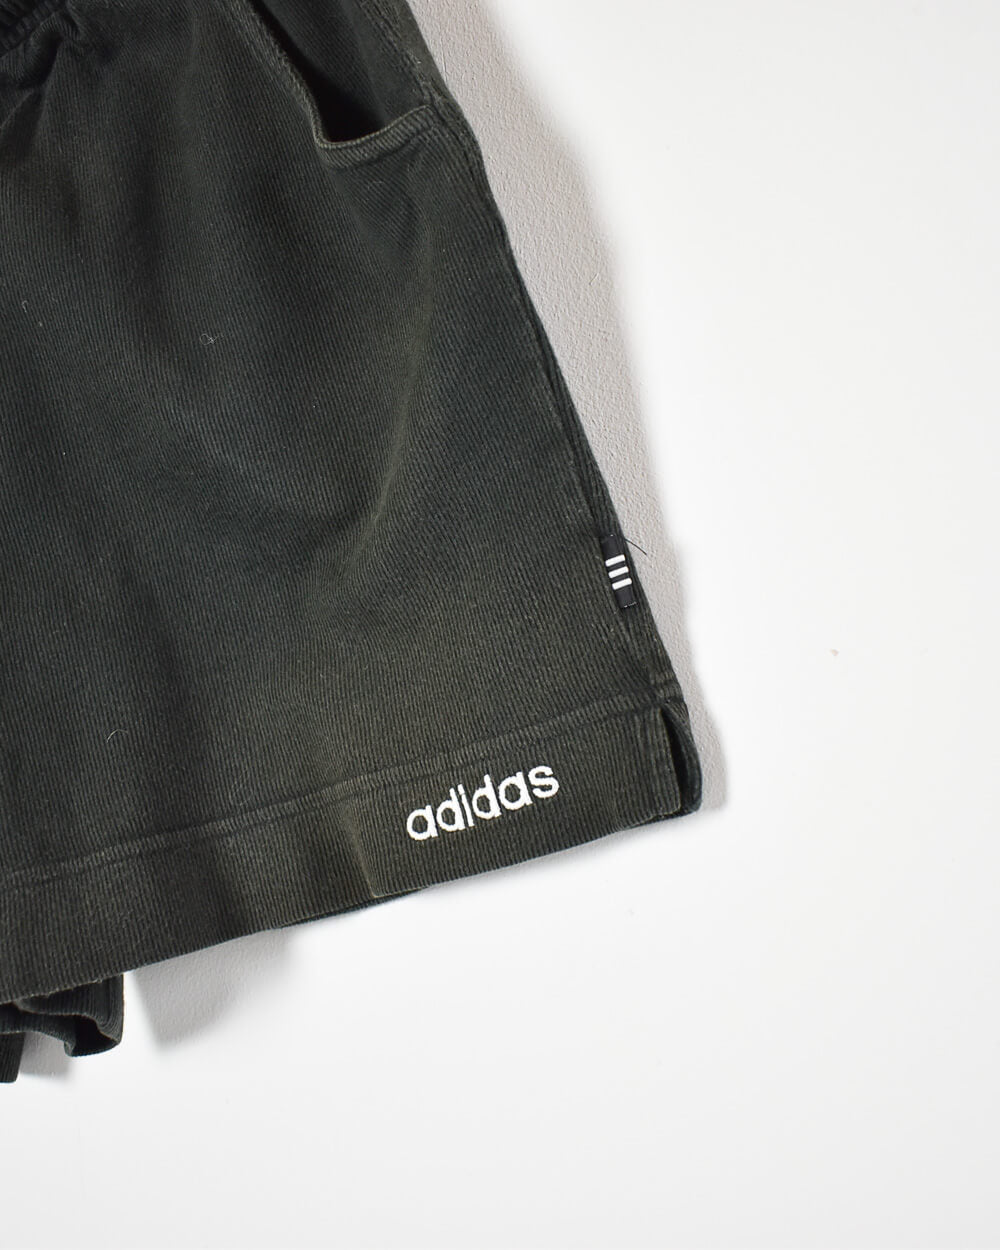 Black Adidas Shorts - W30